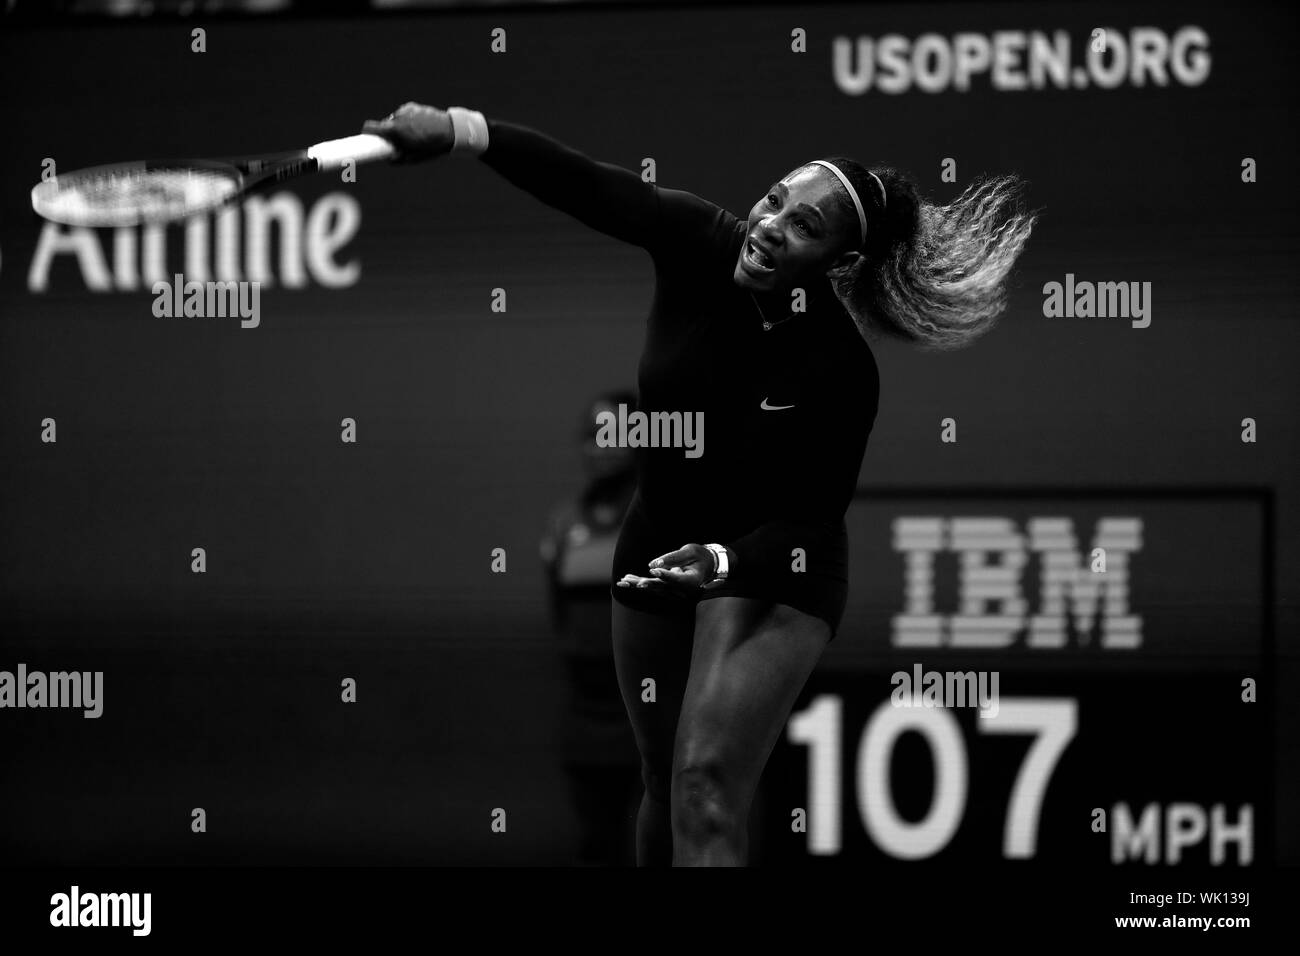 Flushing Meadows, New York, United States - 3 septembre 2019. Serena Williams servant à Wang Qiang de la Chine au cours de leur quart de finale à l'US Open à Flushing Meadows, New York. Williams a remporté le match d'enregistrer son 100e match de l'US Open victoire. Crédit : Adam Stoltman/Alamy Live News Banque D'Images